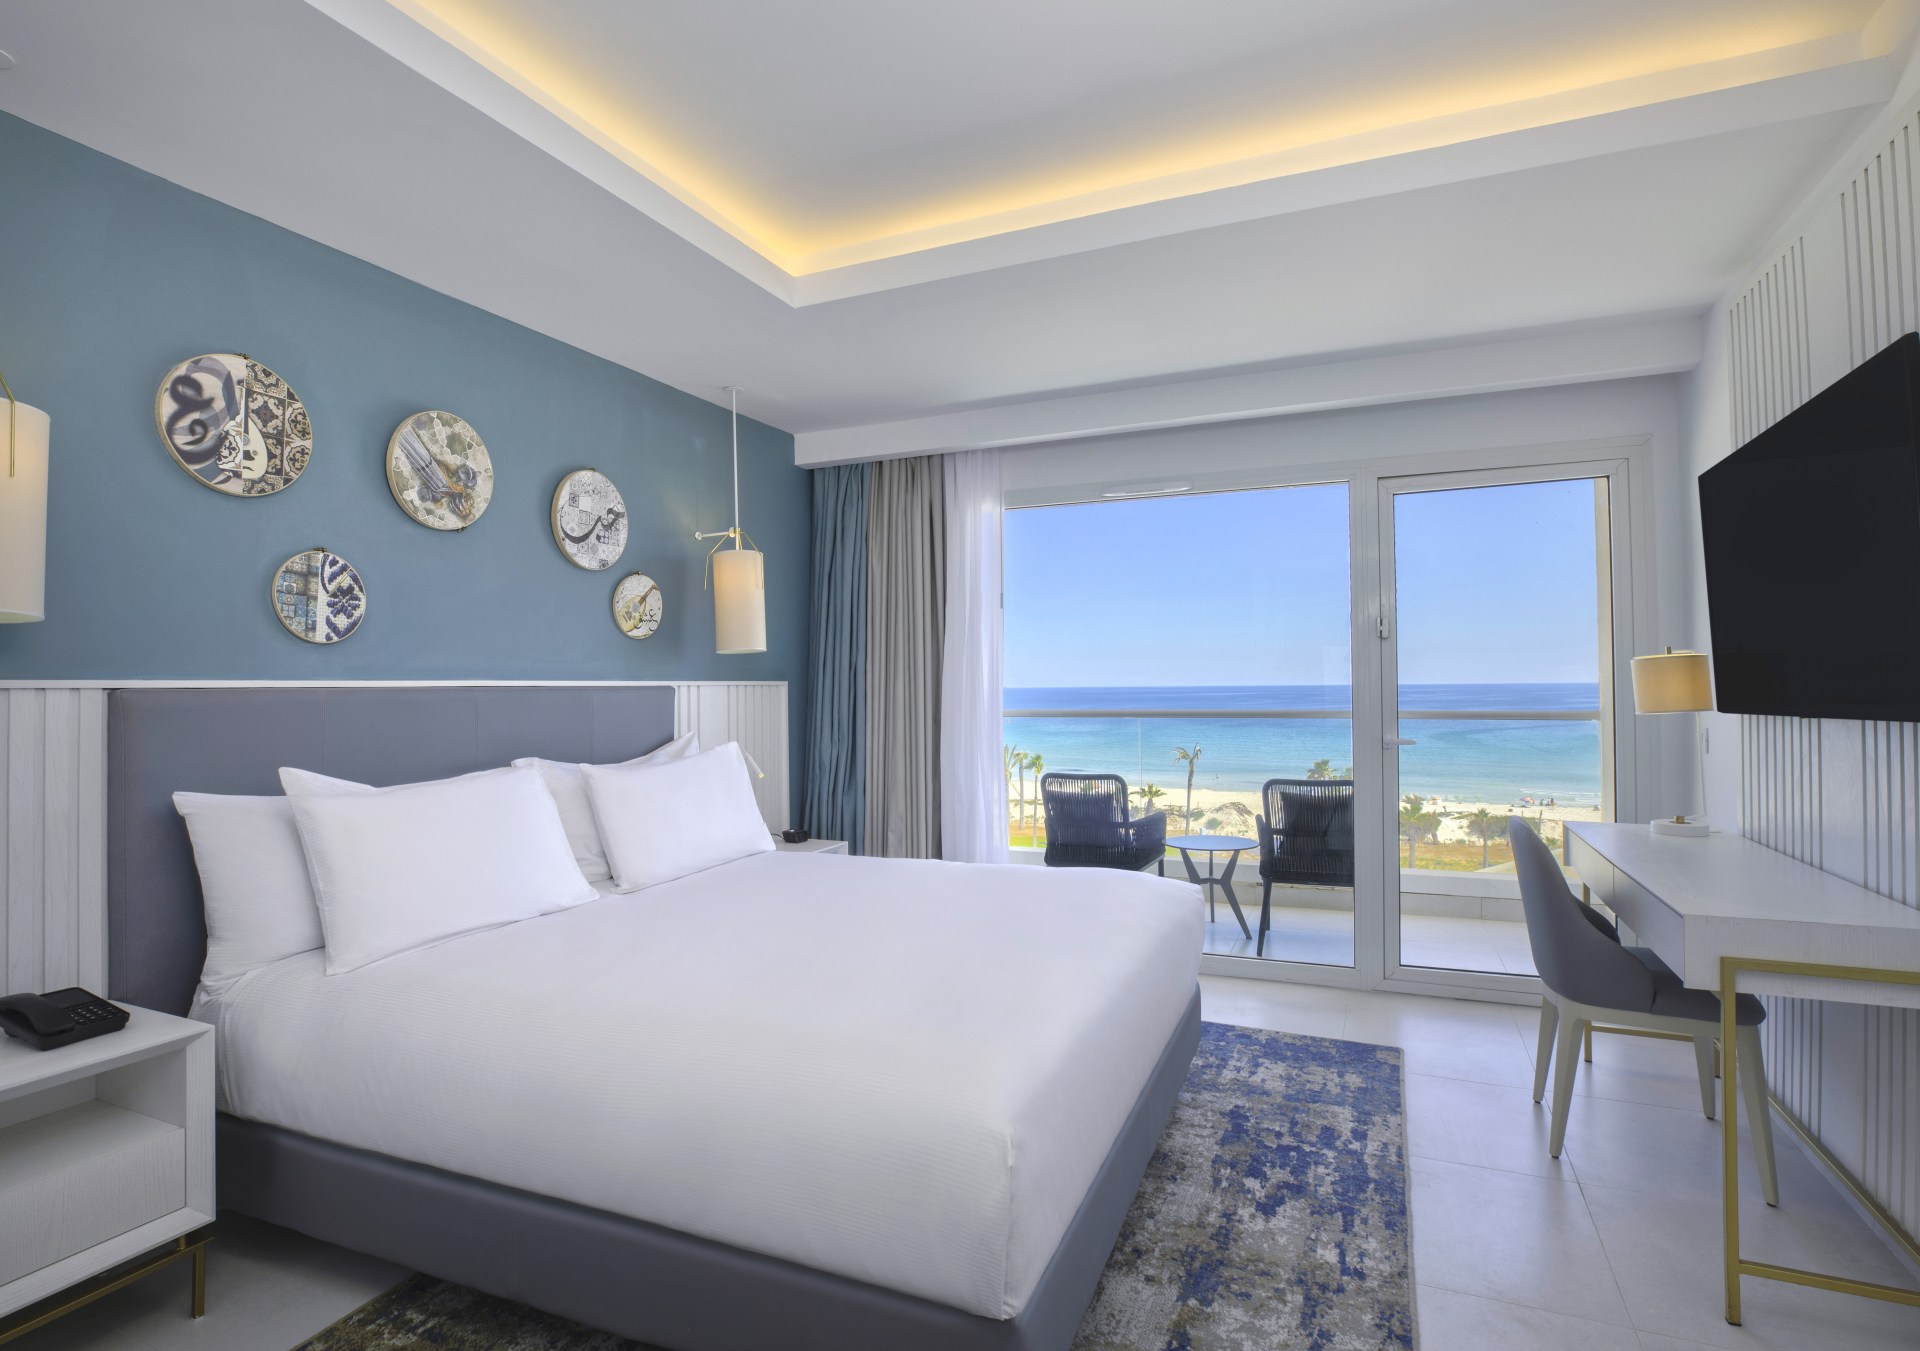 Hilton Skanes Monastir Beach Resort - Guest Room